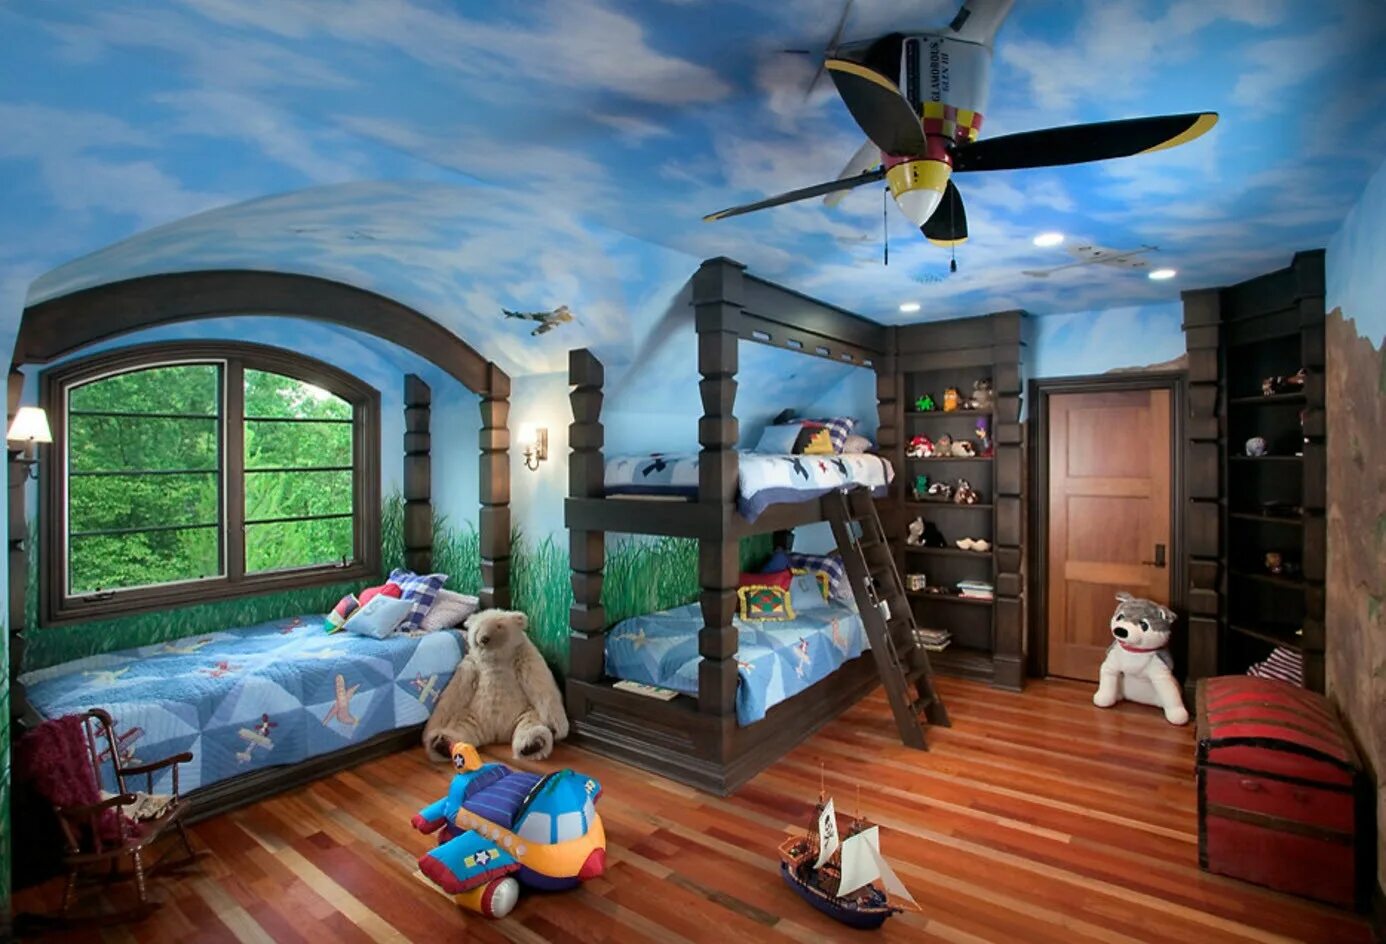 Комнату угадай. Интересные детские комнаты. Необычные комнаты. Необычная детская комната для мальчика. Сказочный интерьер детской комнаты.